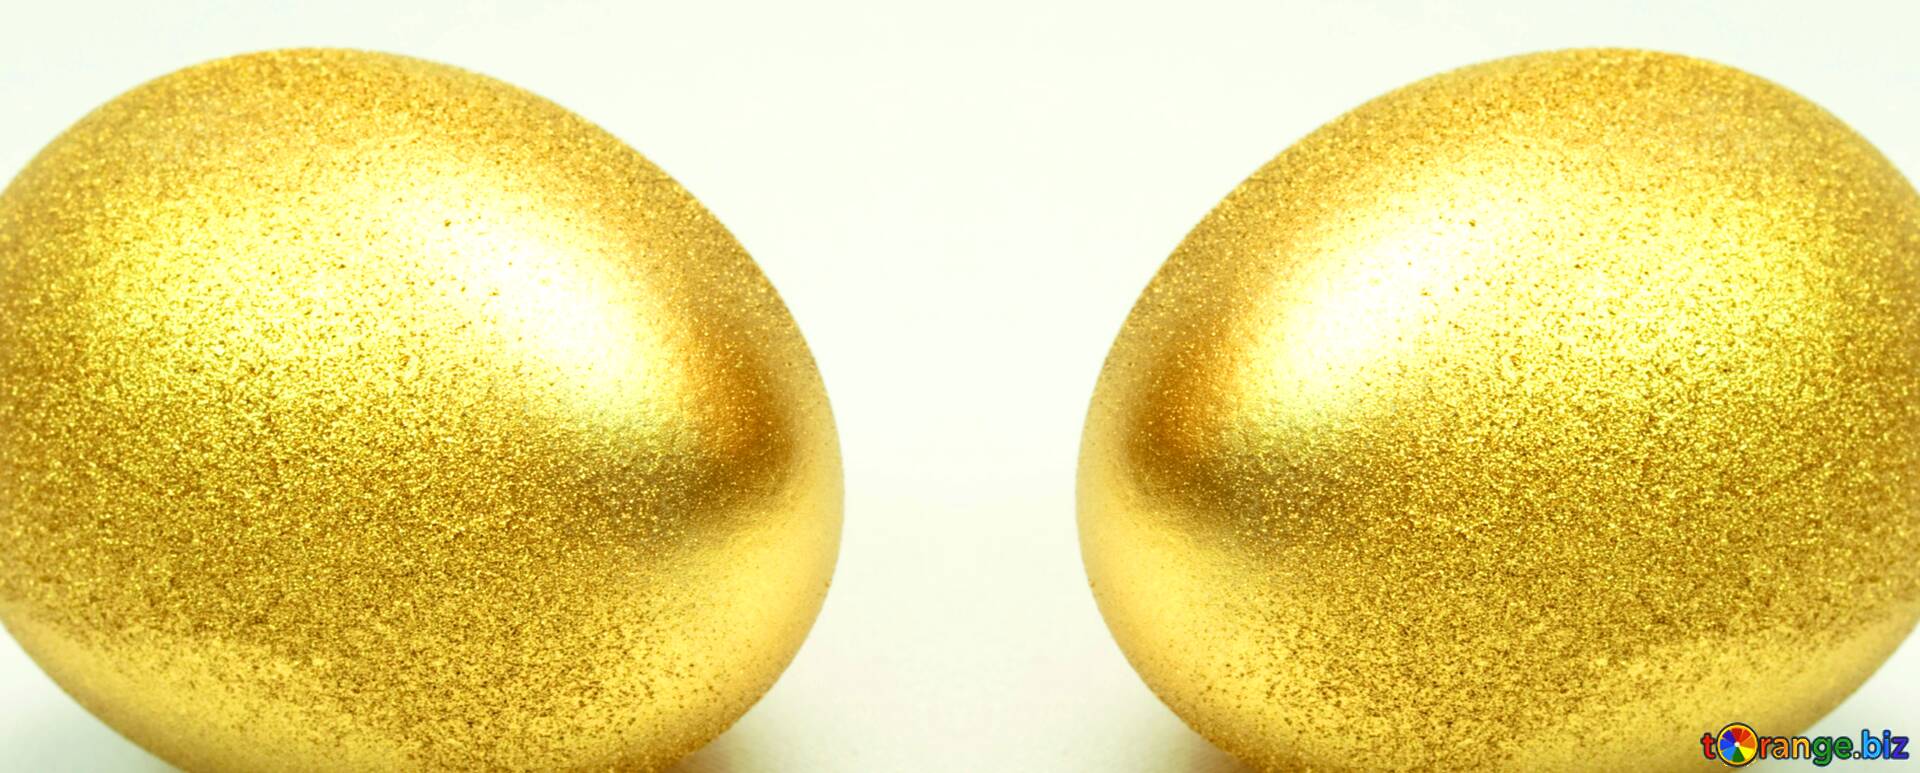 Золотые яйца 2. Золотое яйцо. 2 Золотых яйца. Яйцо золото. Золотого цвета яйца.